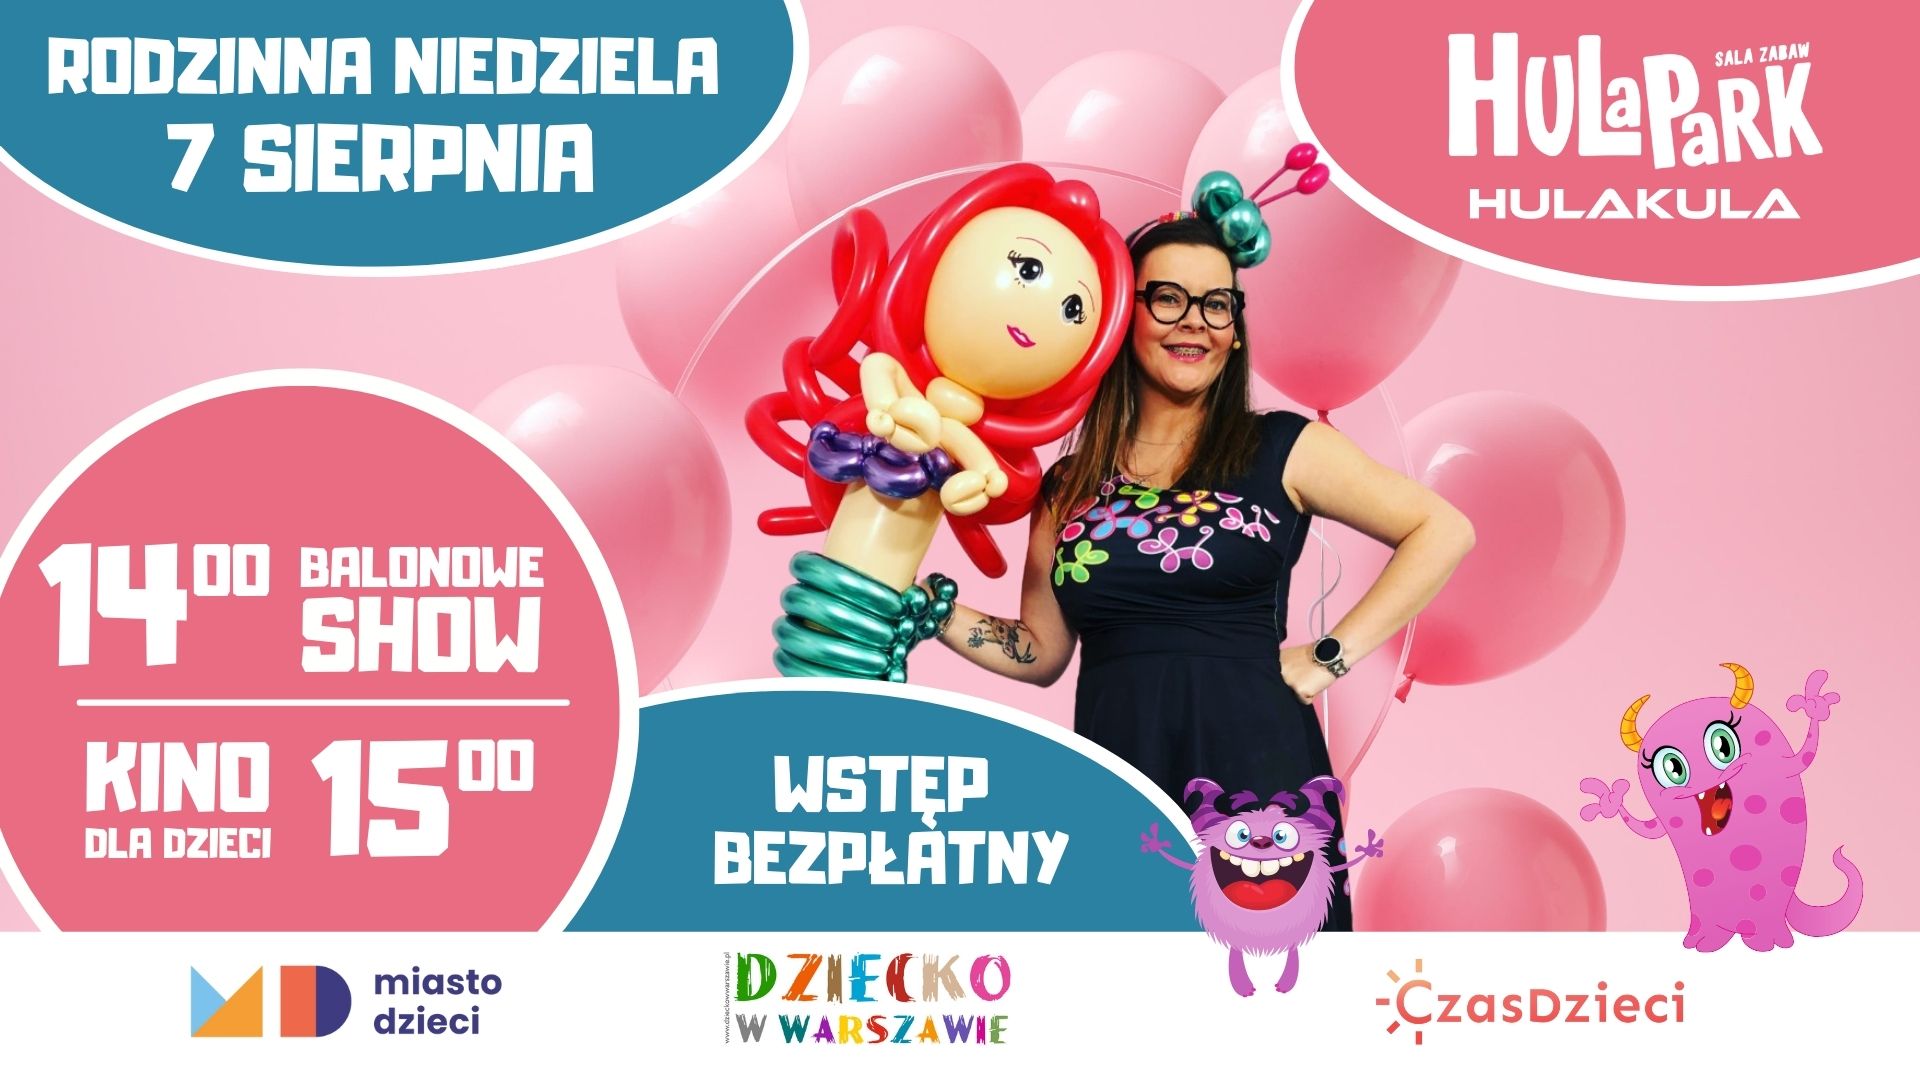 Balonowe show - Rodzinna Niedziela w Hulakula